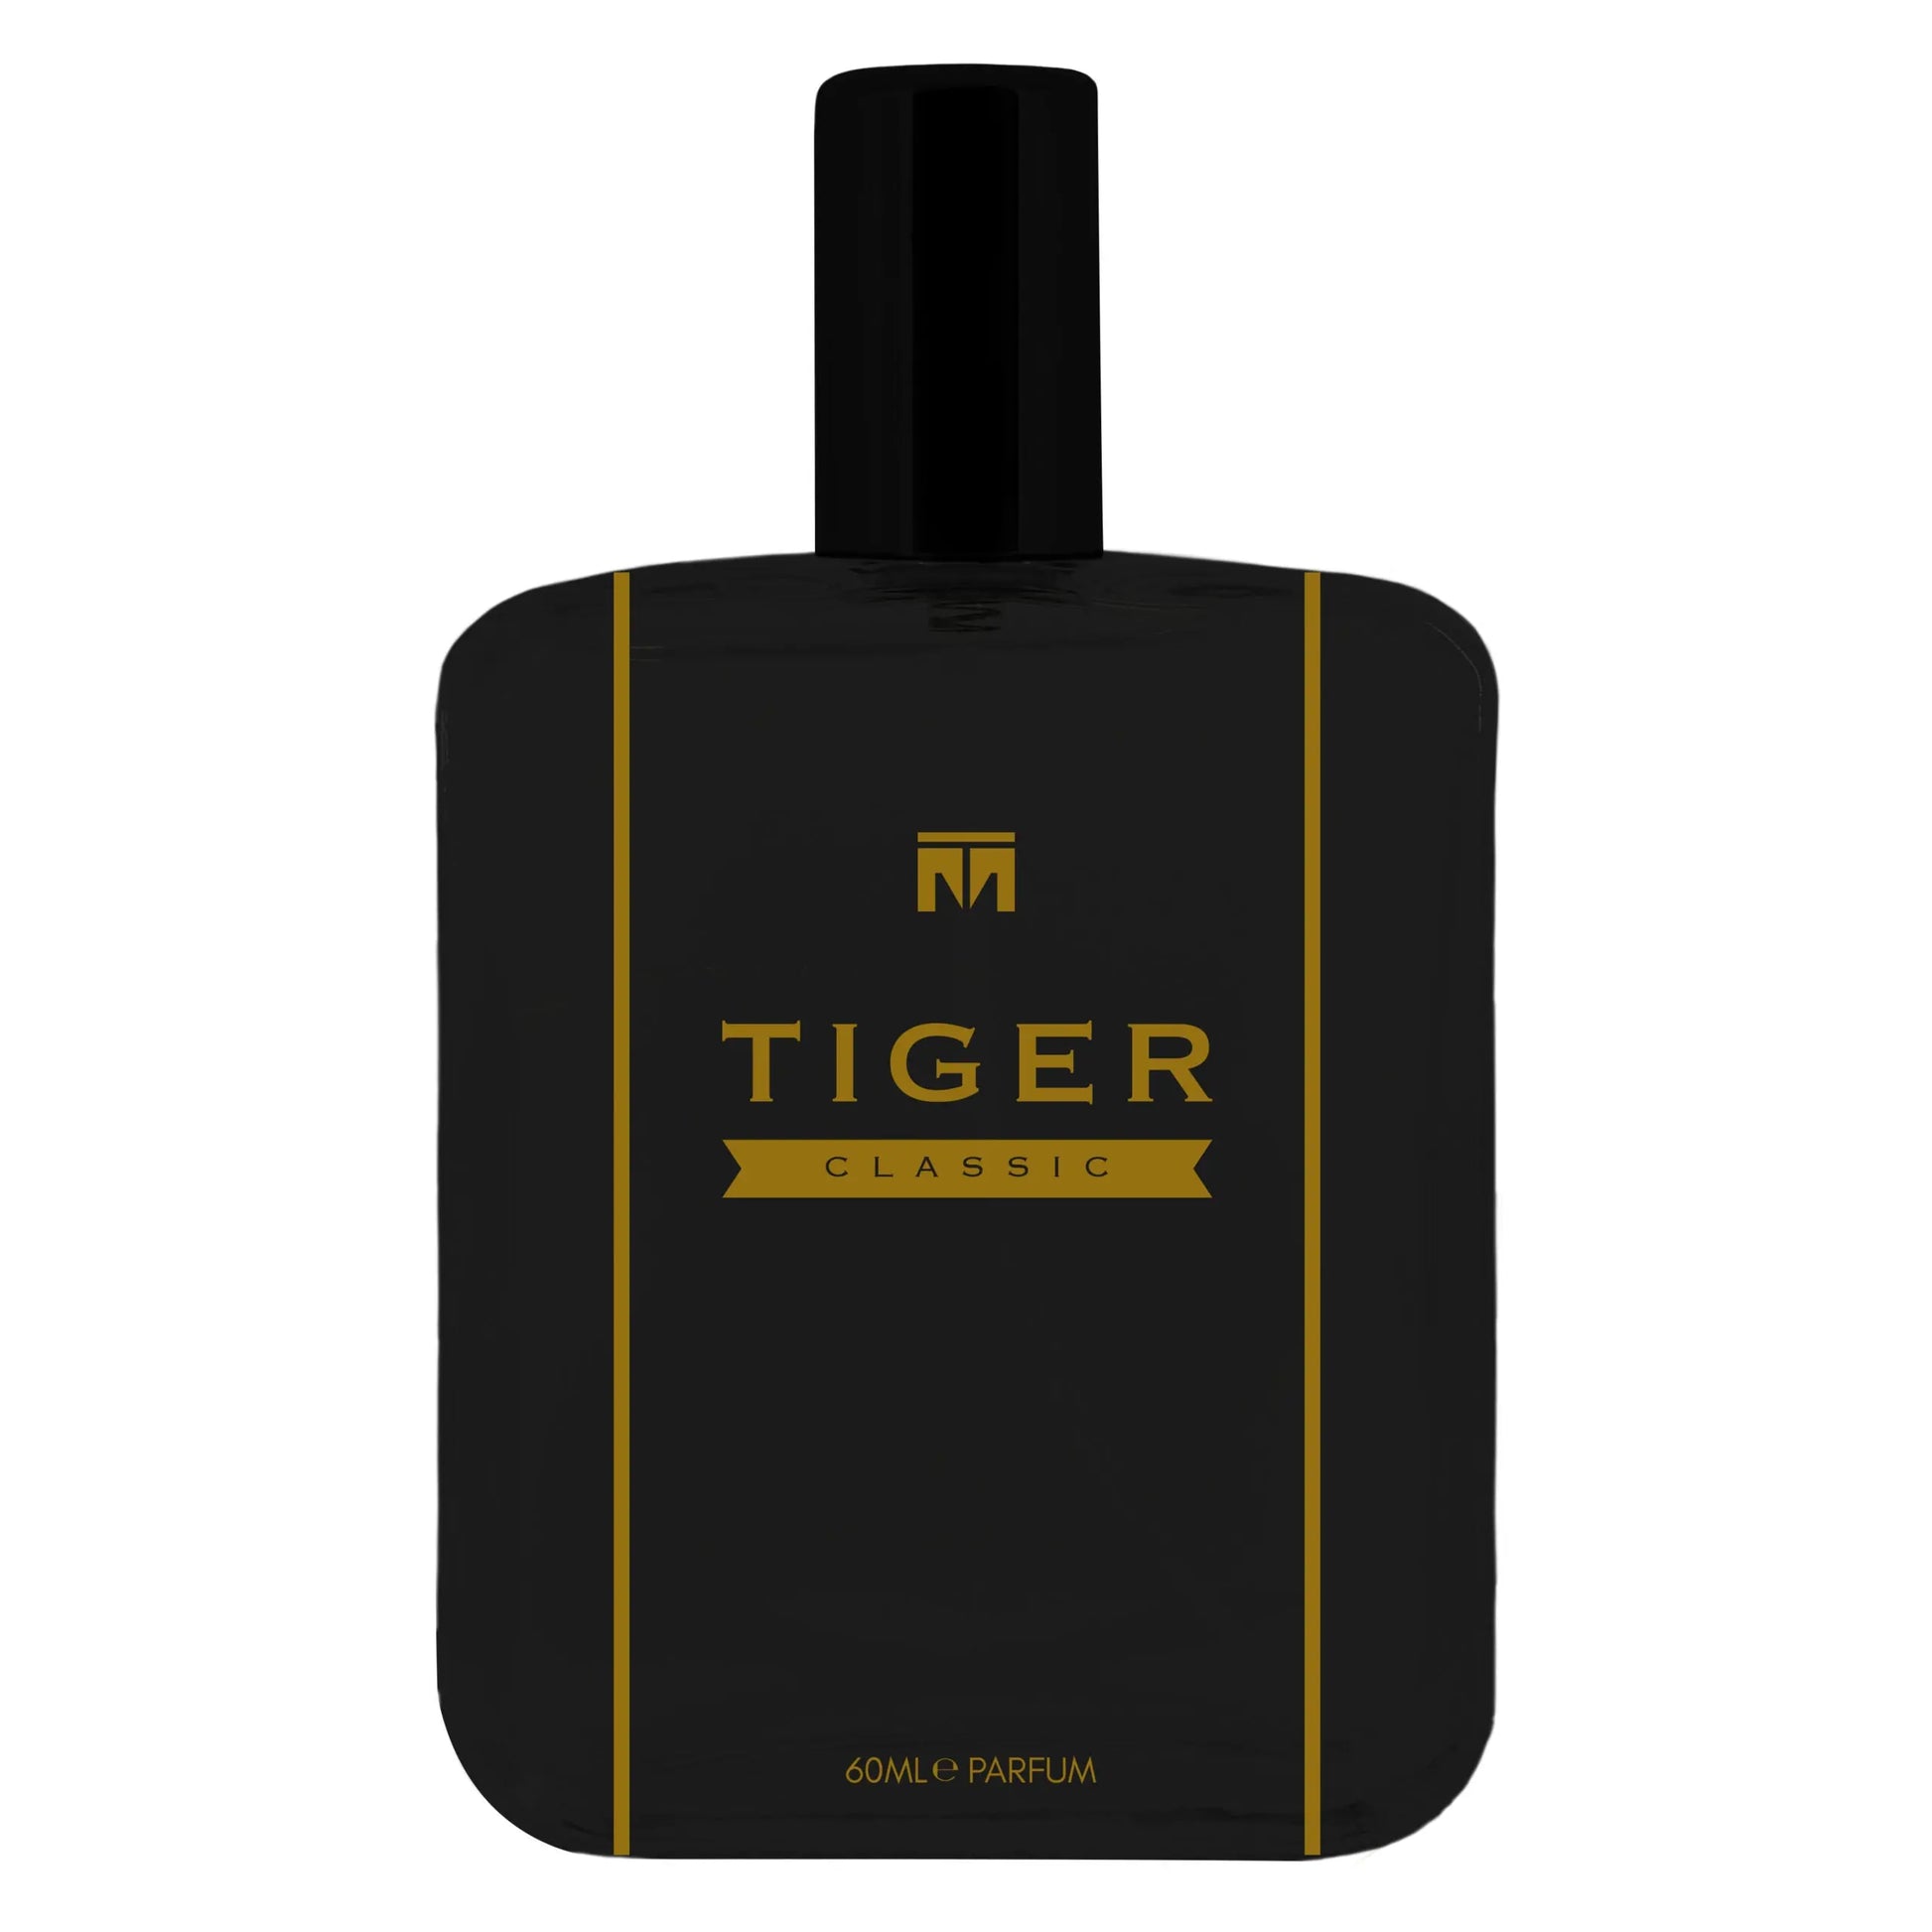 Tiger Designer Classic - 60ml Eau De Parfum - Dapper Industries SA